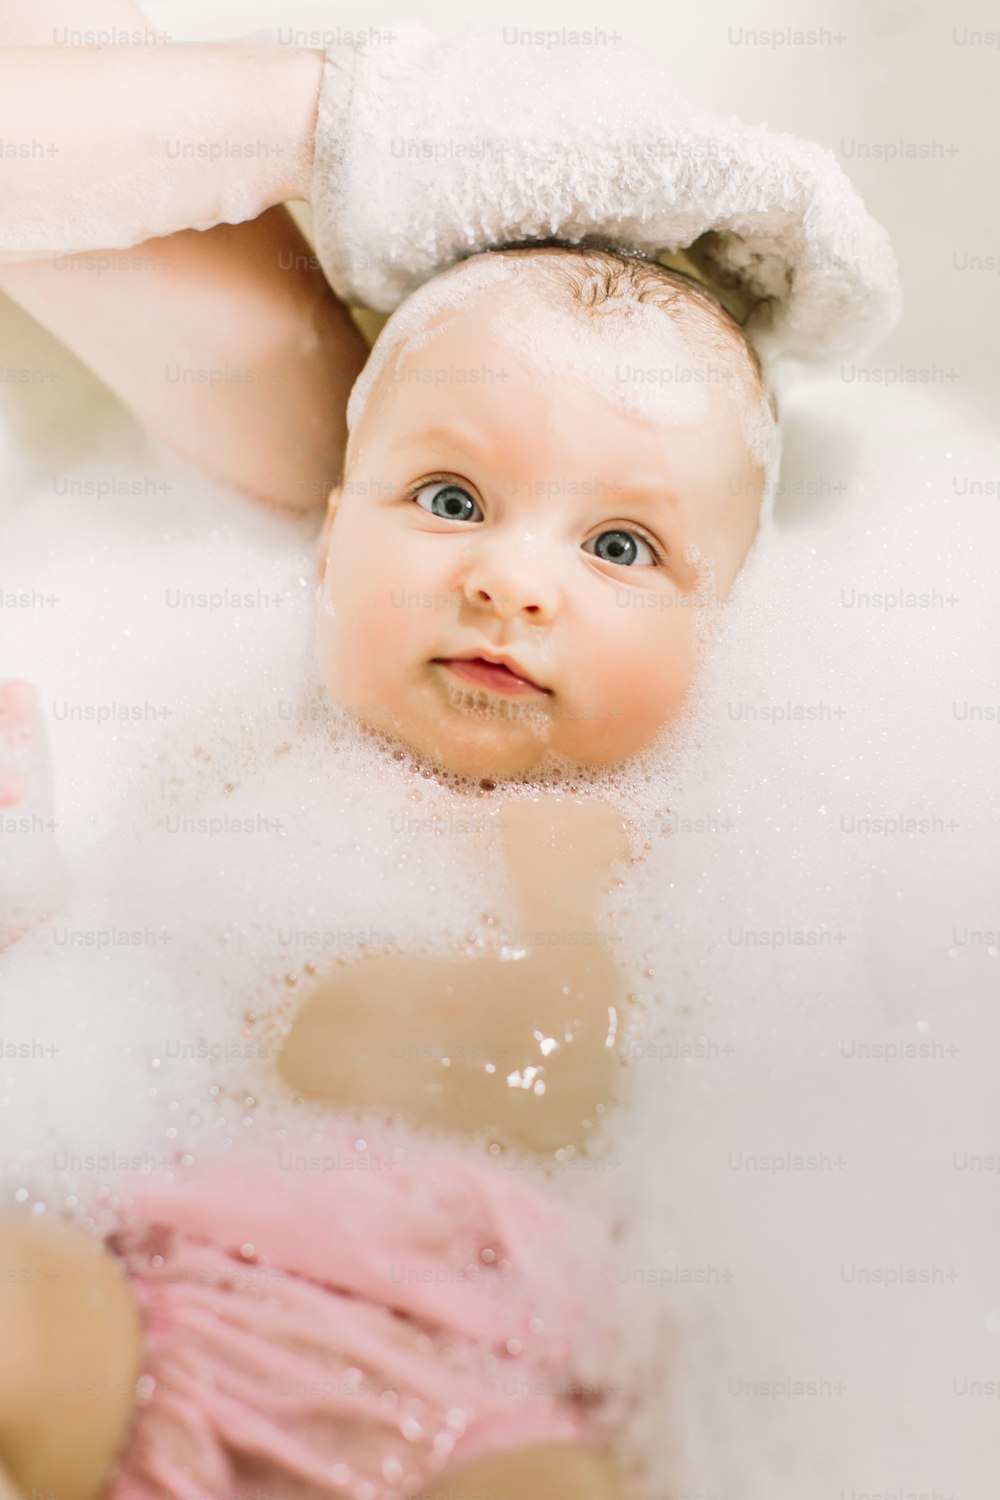 Bebé feliz riendo tomando un baño jugando con burbujas de espuma. Niño pequeño en una bañera. Lavado y baño de bebés. Higiene y cuidado de los niños pequeños. Adorable bebé de baño con espuma de jabón en el cabello